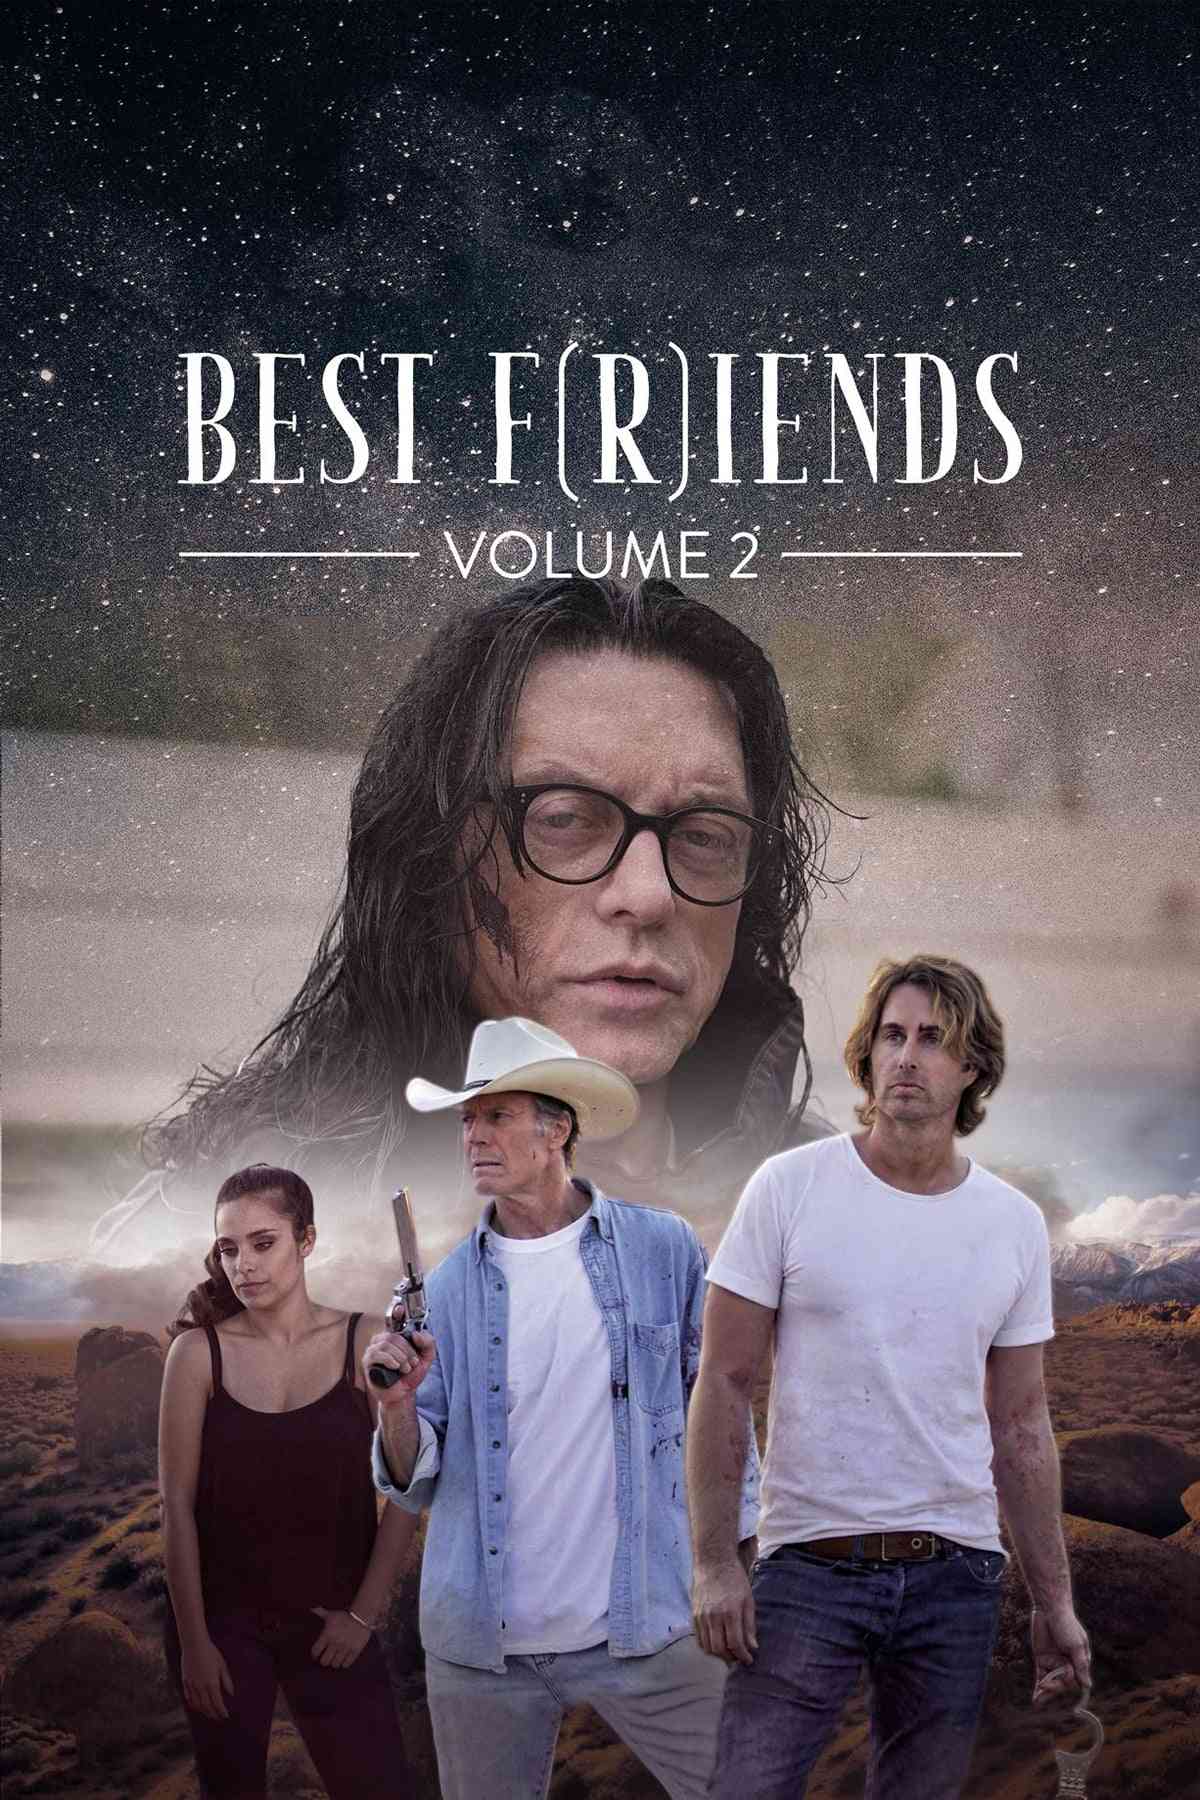 Najlepsi przyjaciele vol. 2  (2018),Online za darmo